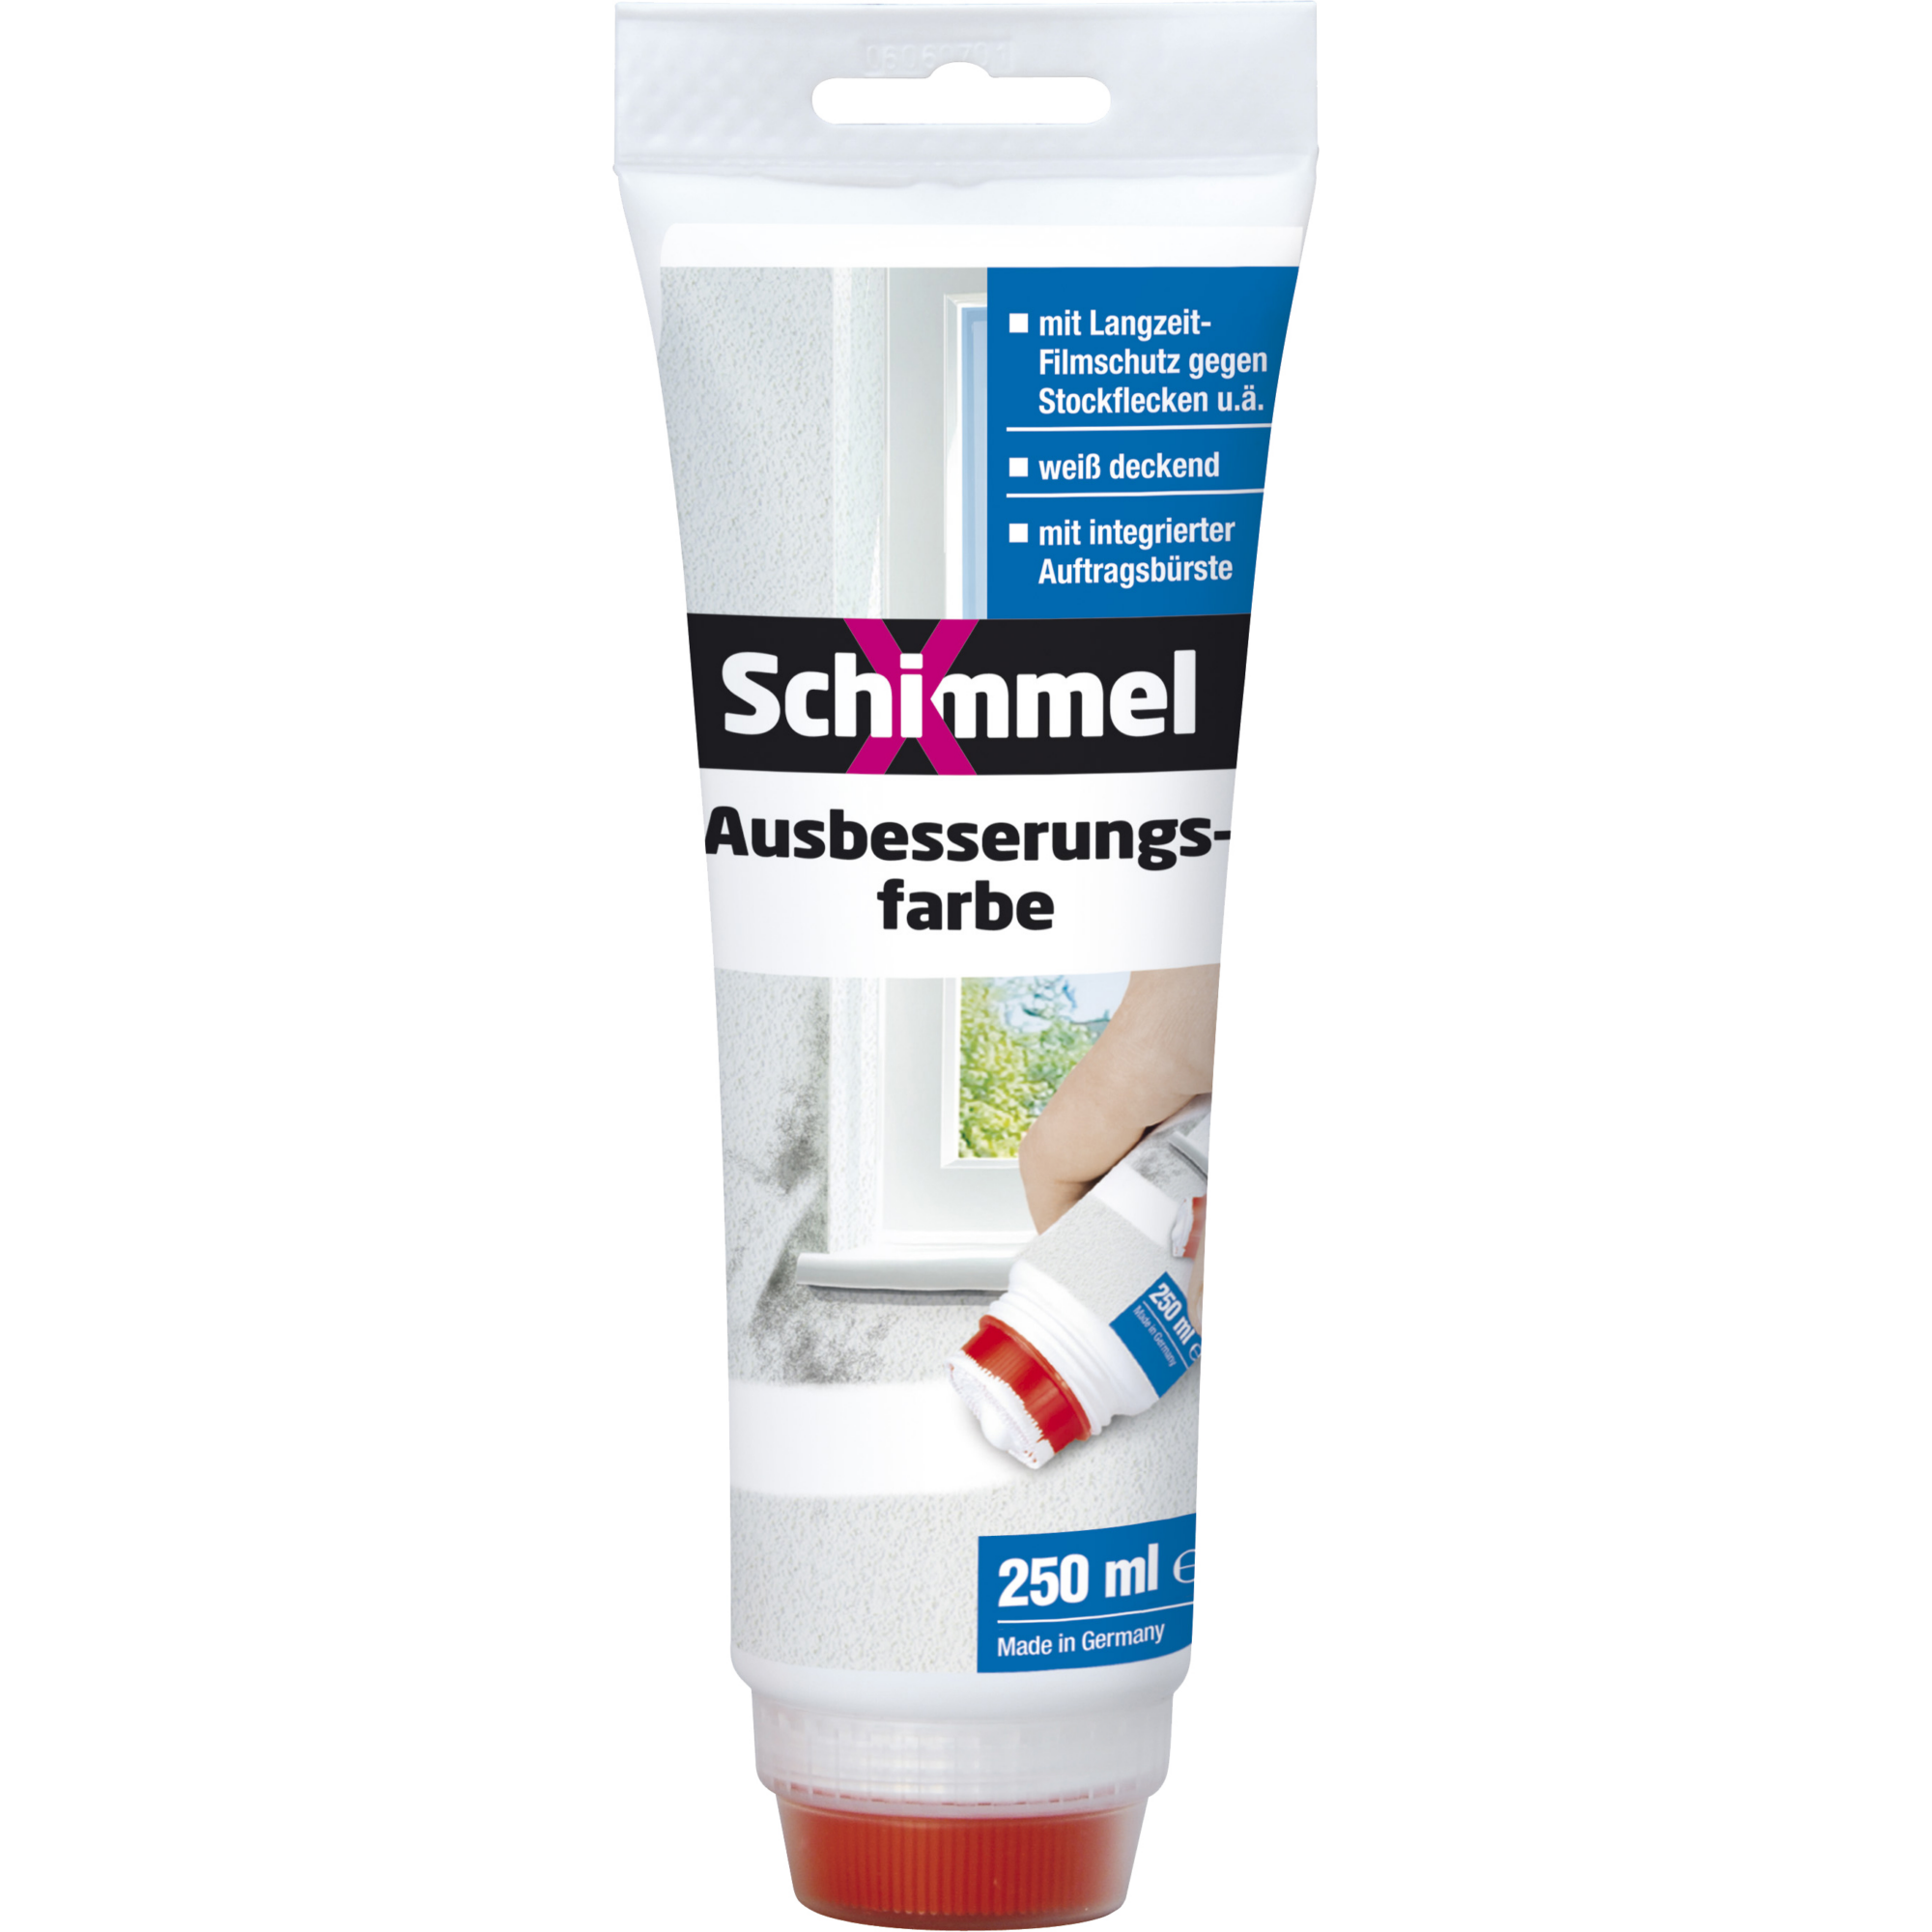 Ausbesserungsfarbe 'SchimmelX' 250 ml + product picture